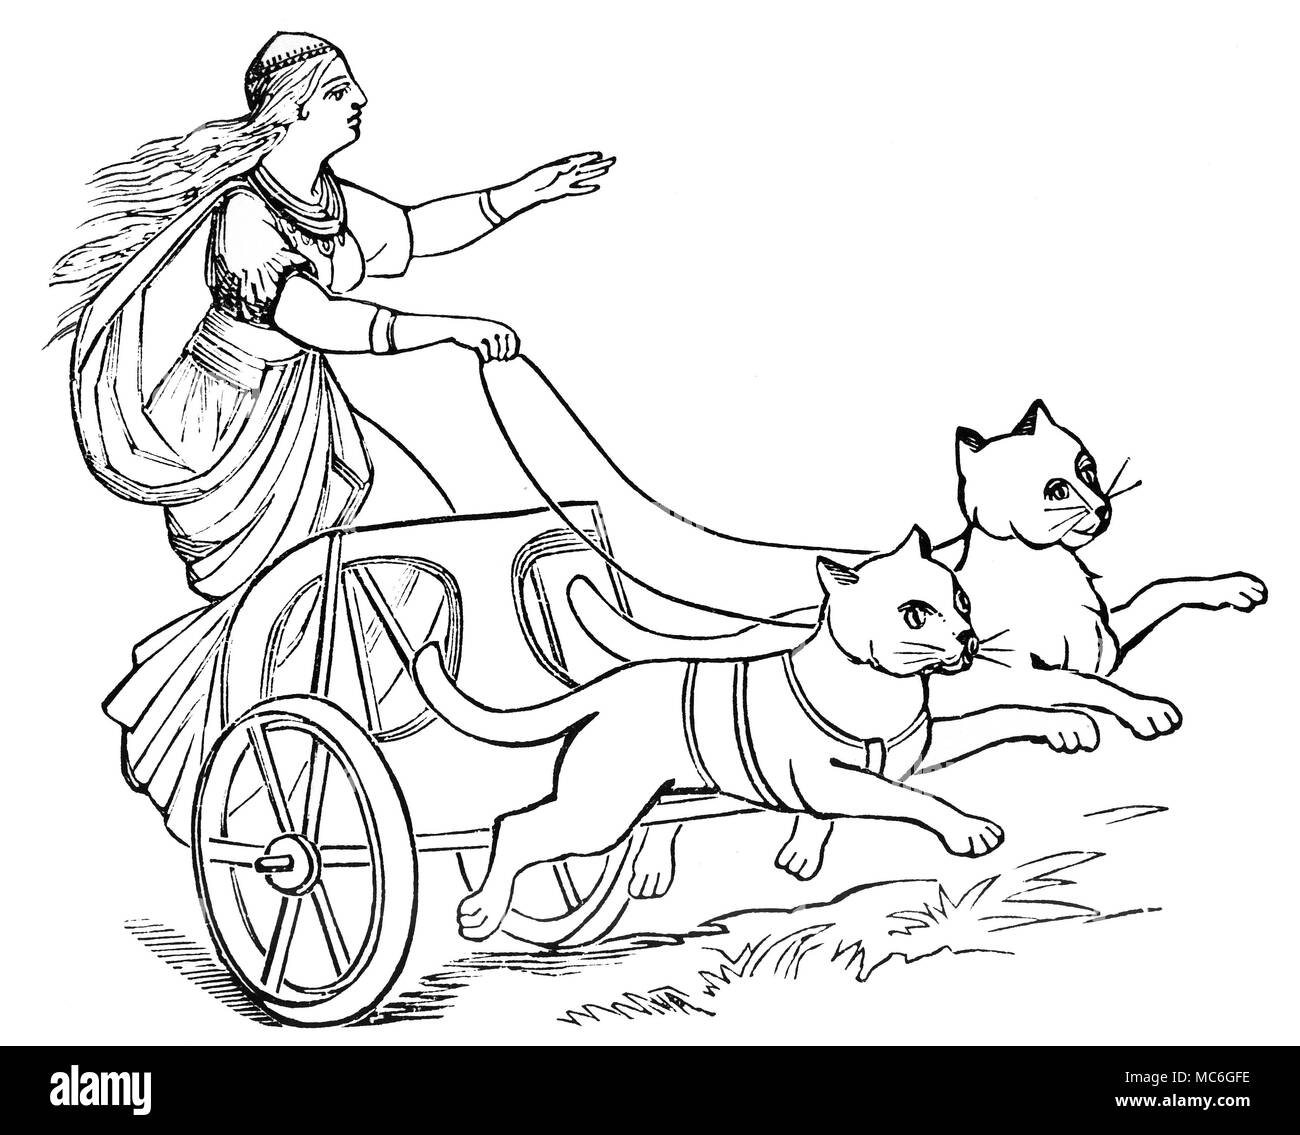 Germanische Mythologie - Freya, der Göttin Freya, die in ihrem Wagen von Katzen gezogen. Freya, die Frau von Odin, war ursprünglich eine Mondgöttin. Außer Sein eine der Muttergöttinnen, sie war auch ein Sibyl, begabt mit der Kraft der Prophetie. In einigen Bildern, Freya ist in einem Wagen von zwei Wildschweine zog gezeichnet. 19. jahrhundert Holz-Gravur. Stockfoto